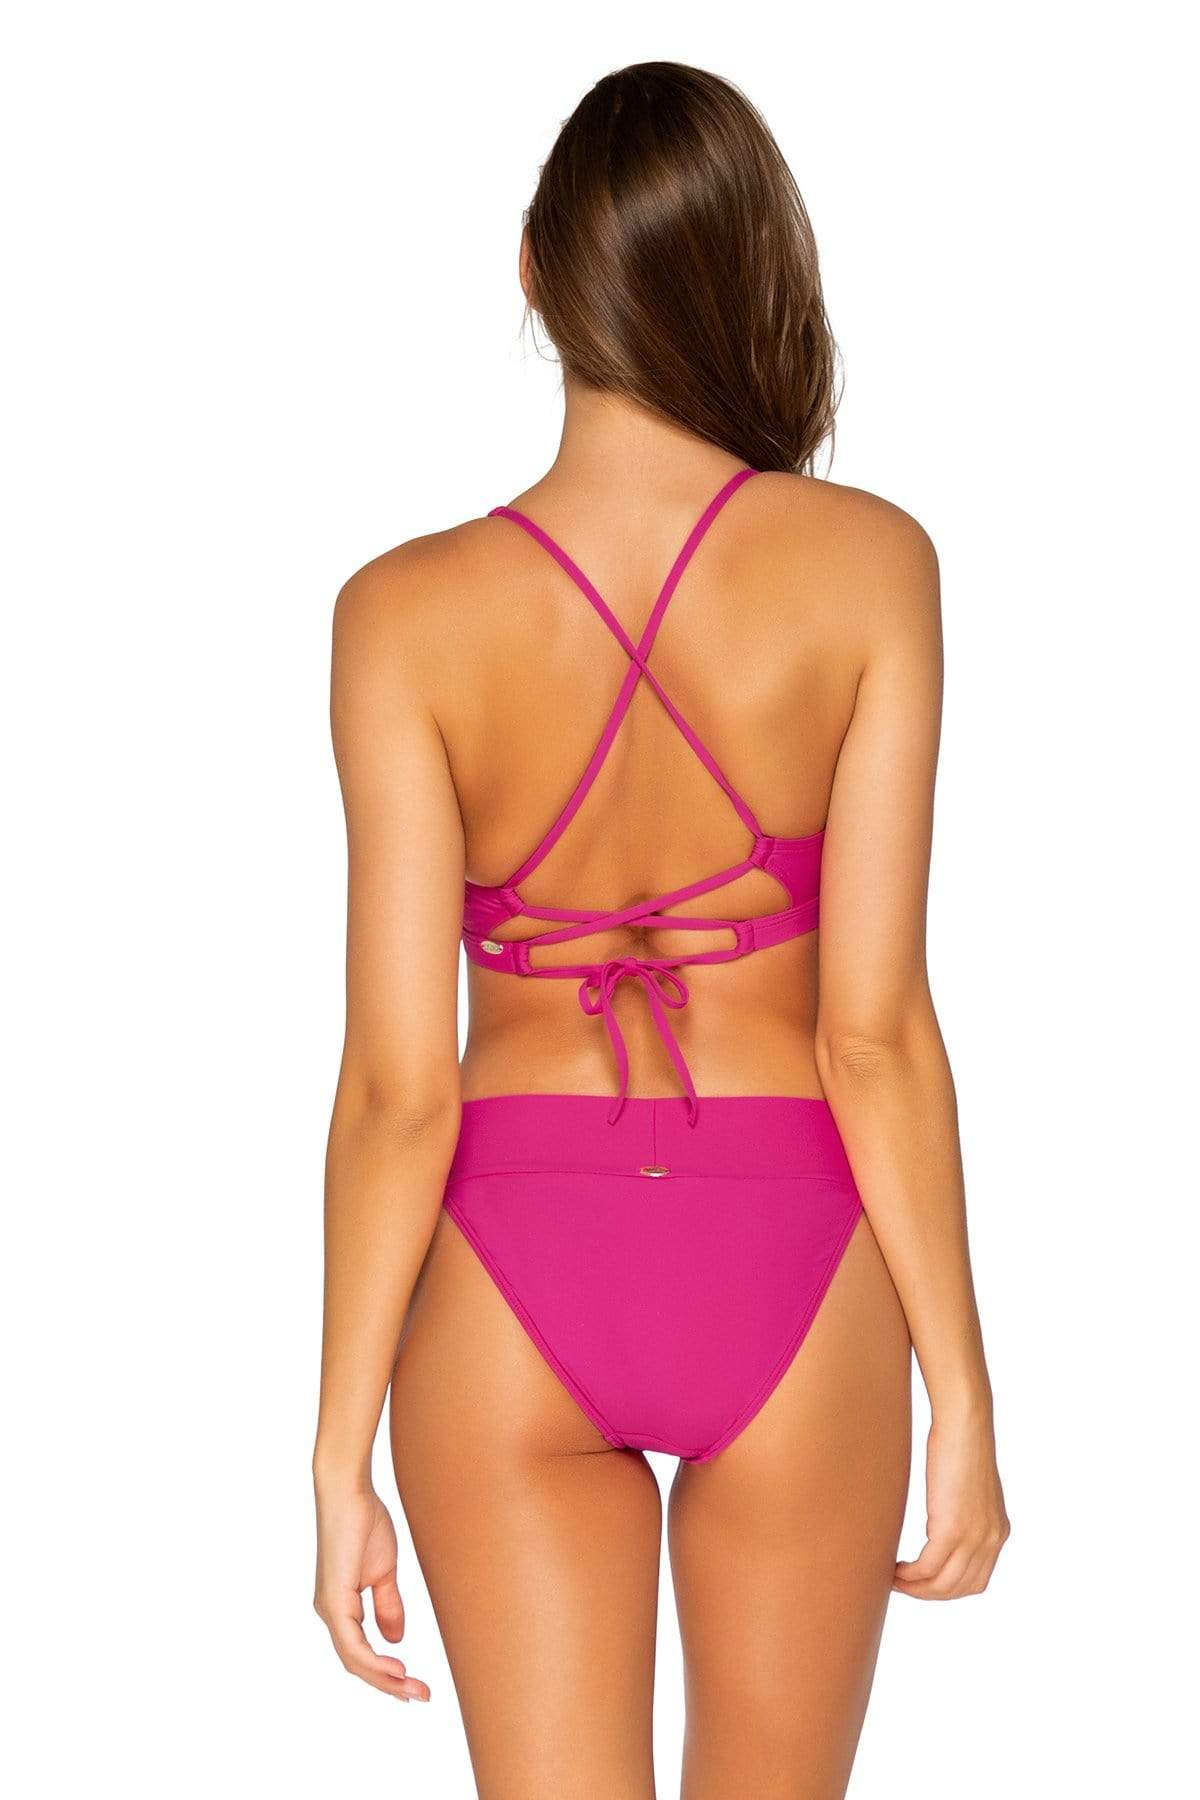 Bestswimwear -  Sunsets Pitaya Brandi Bralette